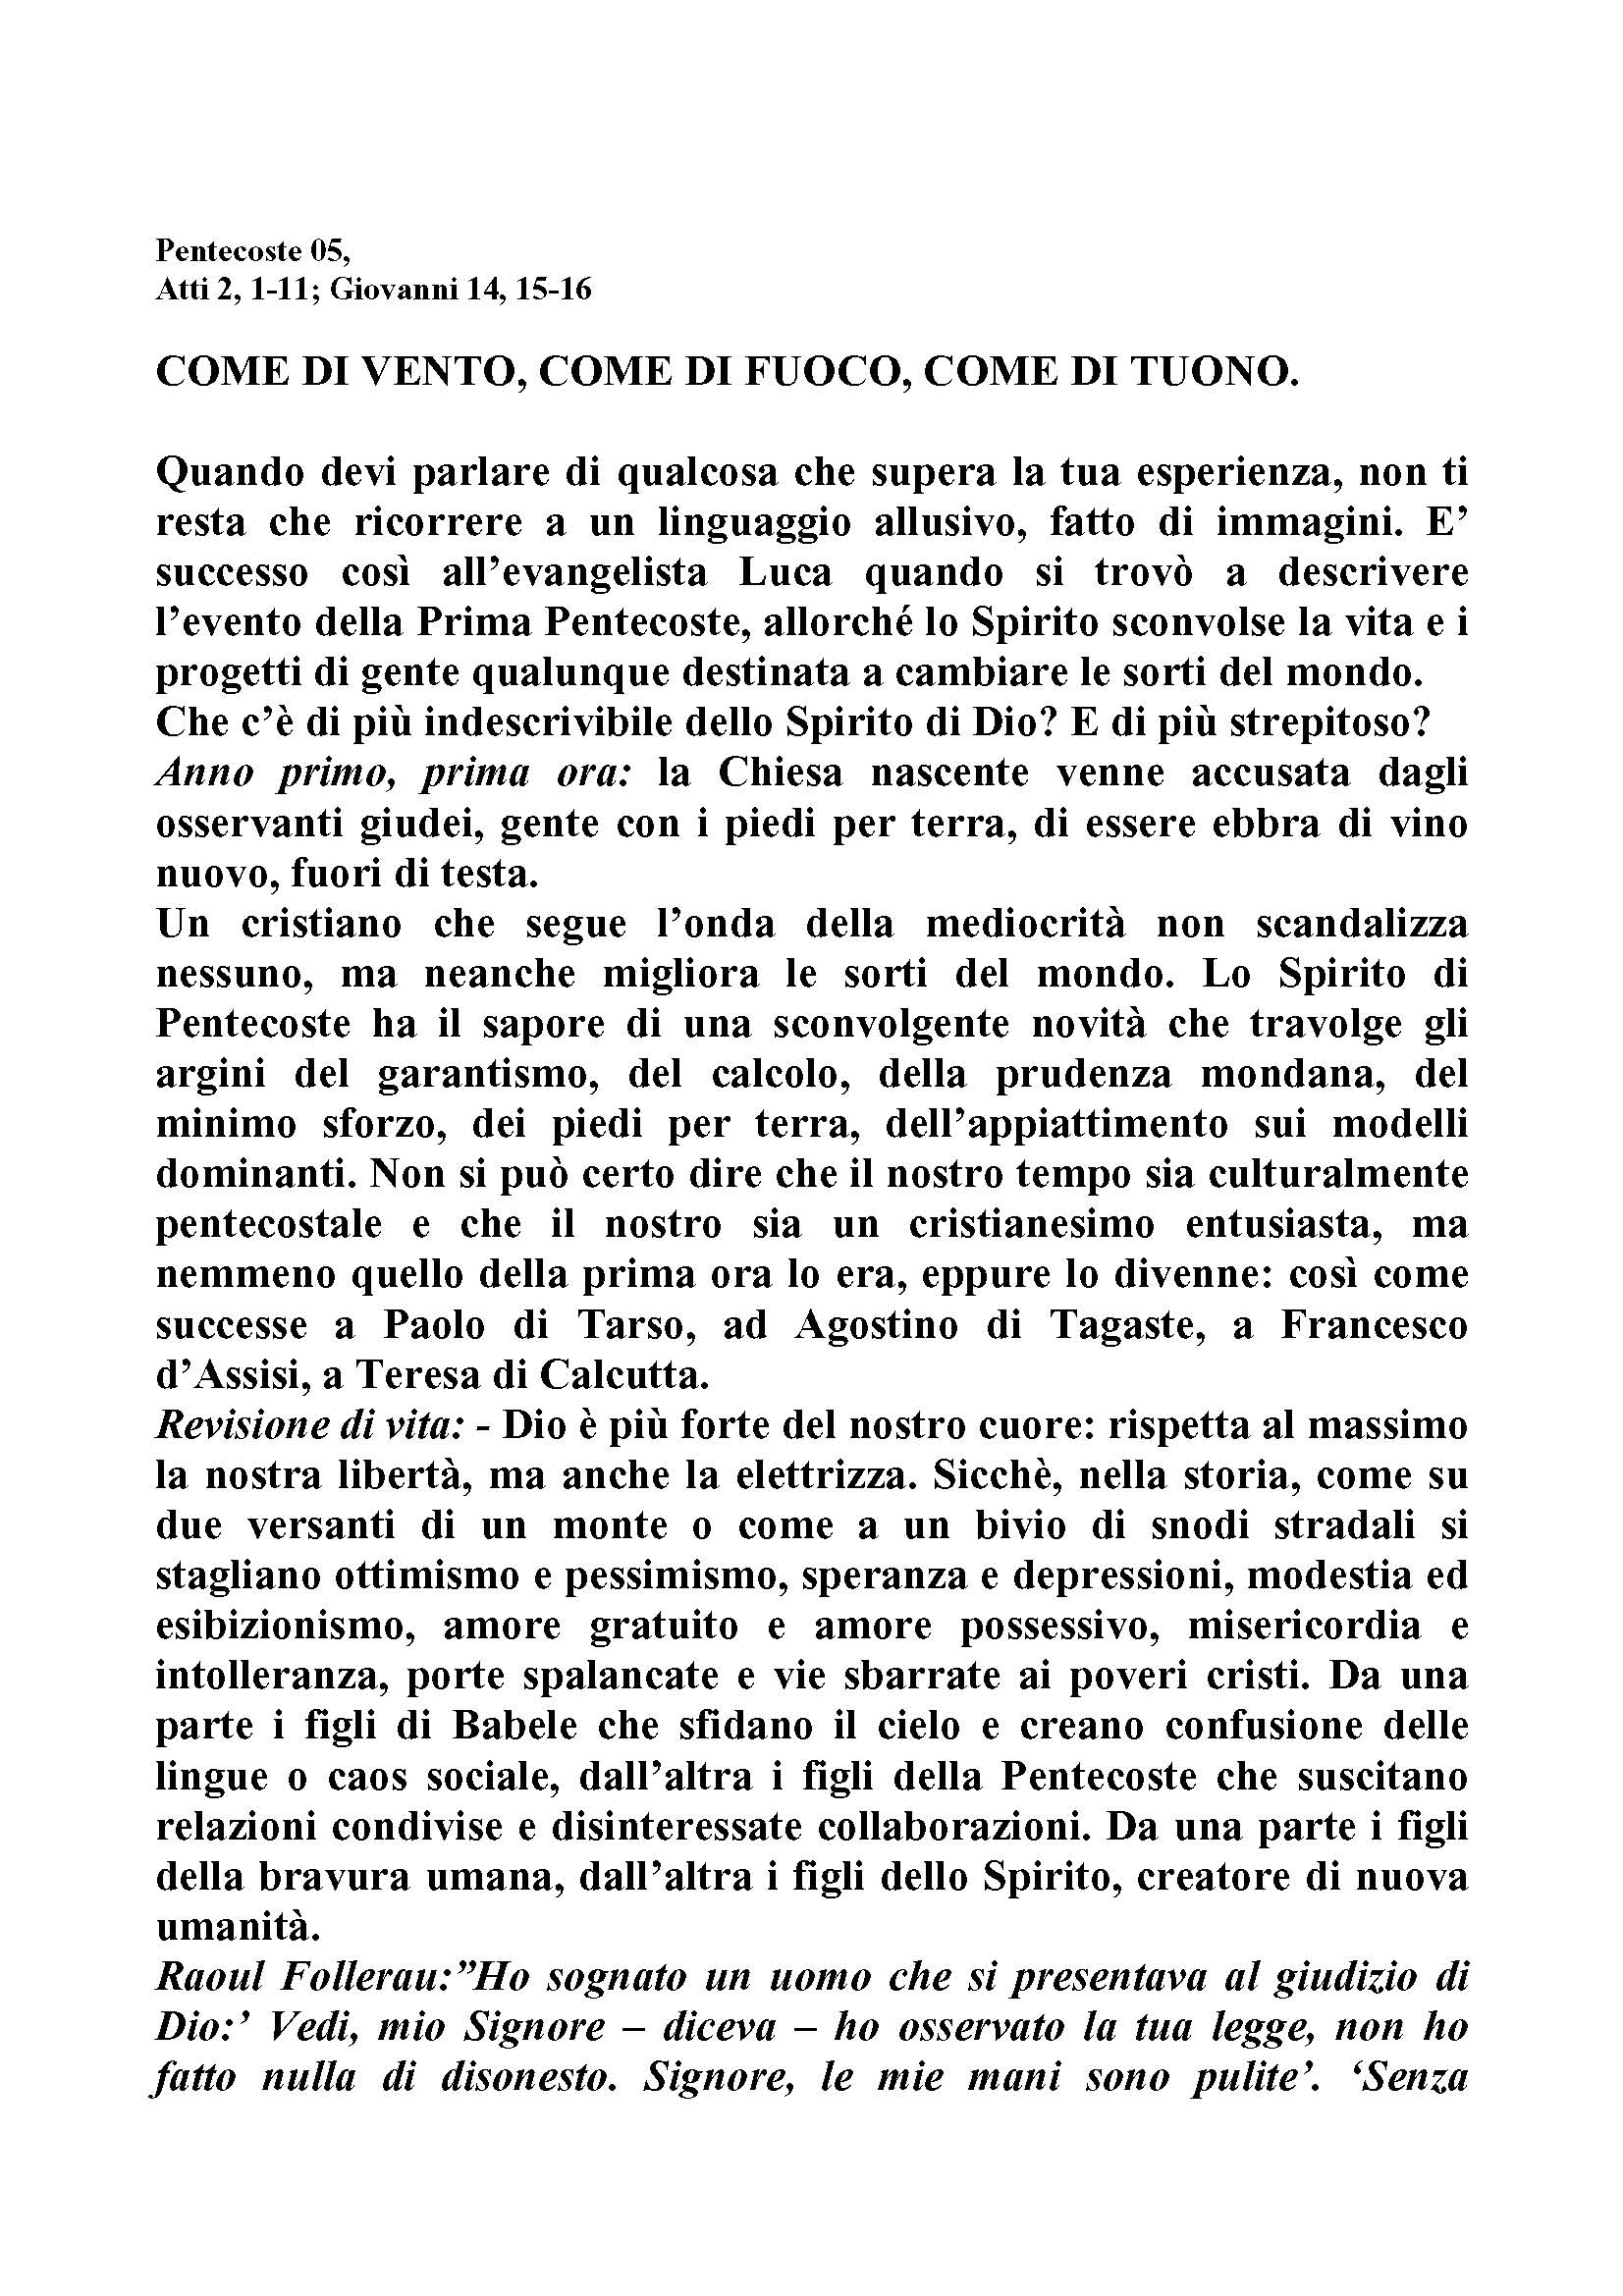 Pentecoste_05_COME_DI_VENTO_COME_DI_FUOCO_COME_DI_TUONO.pdf